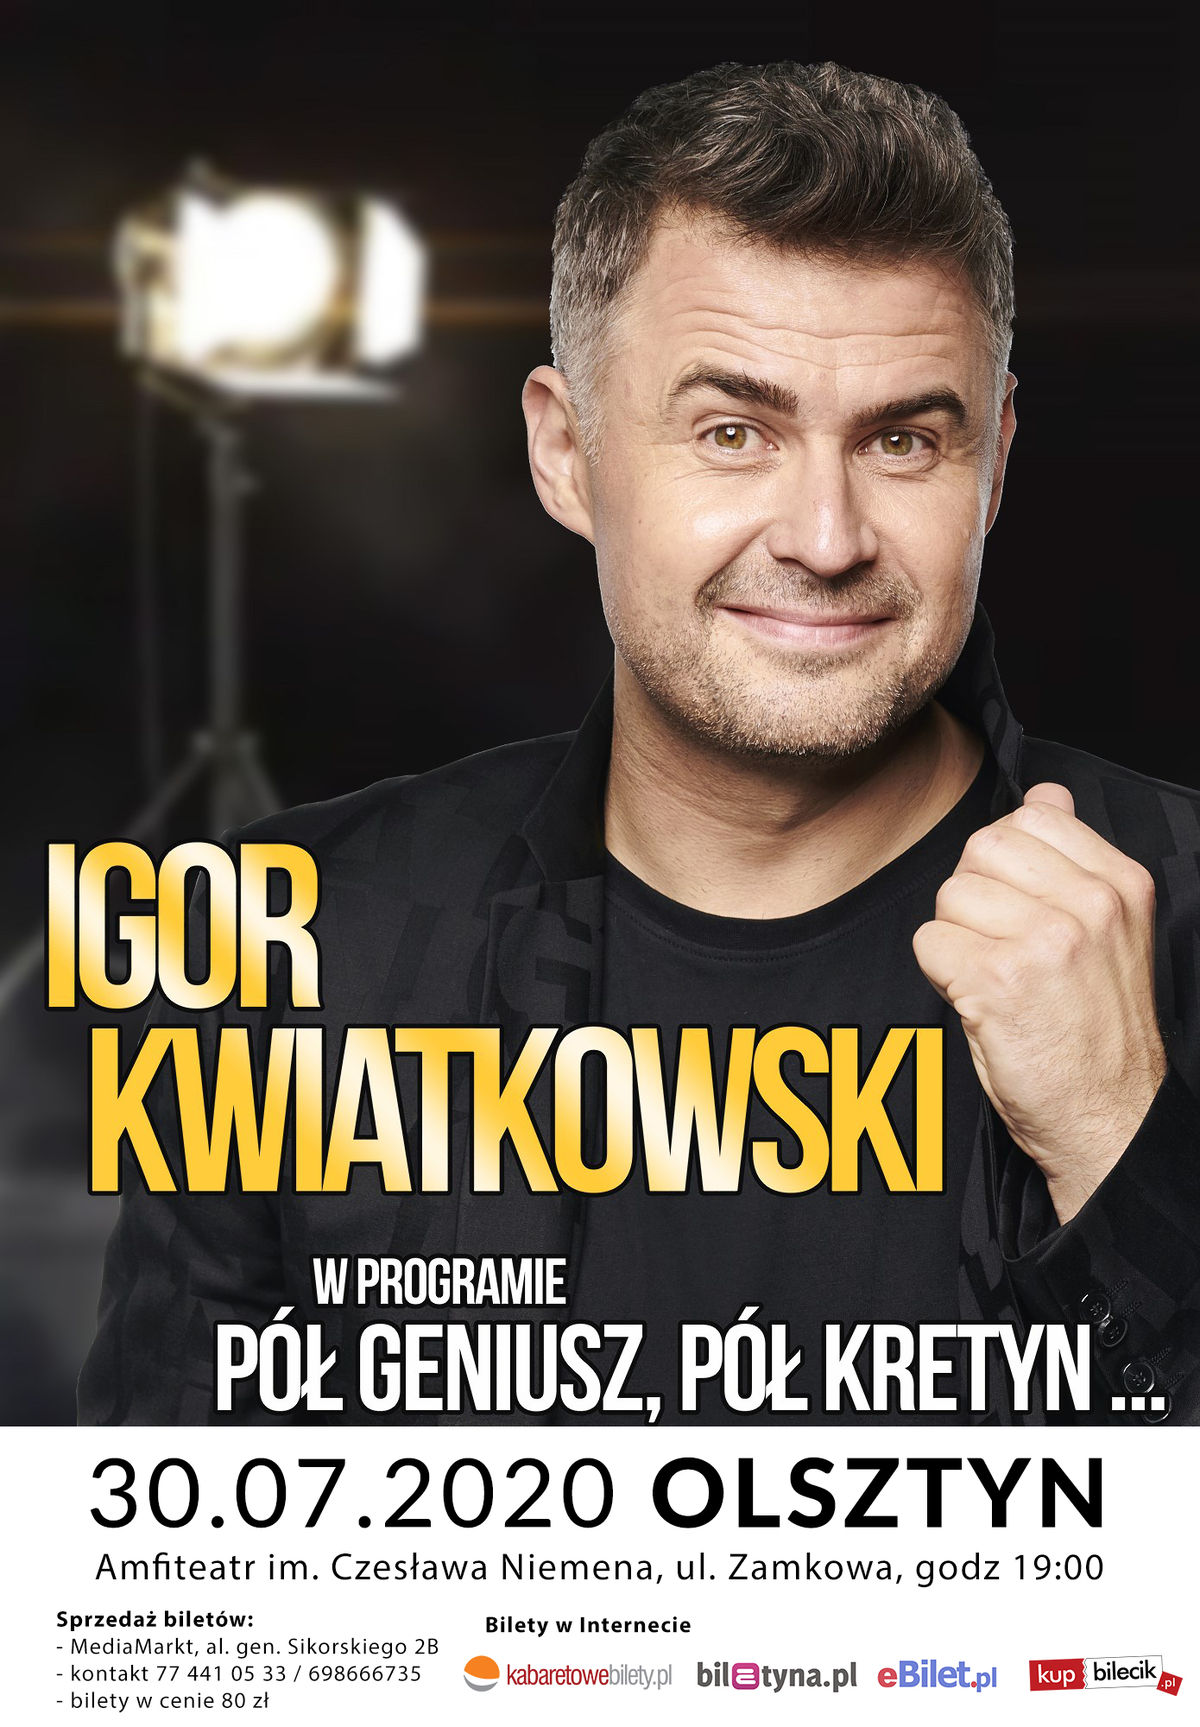 IGOR KWIATKOWSKI - Pół geniusz pół kretyn - full image